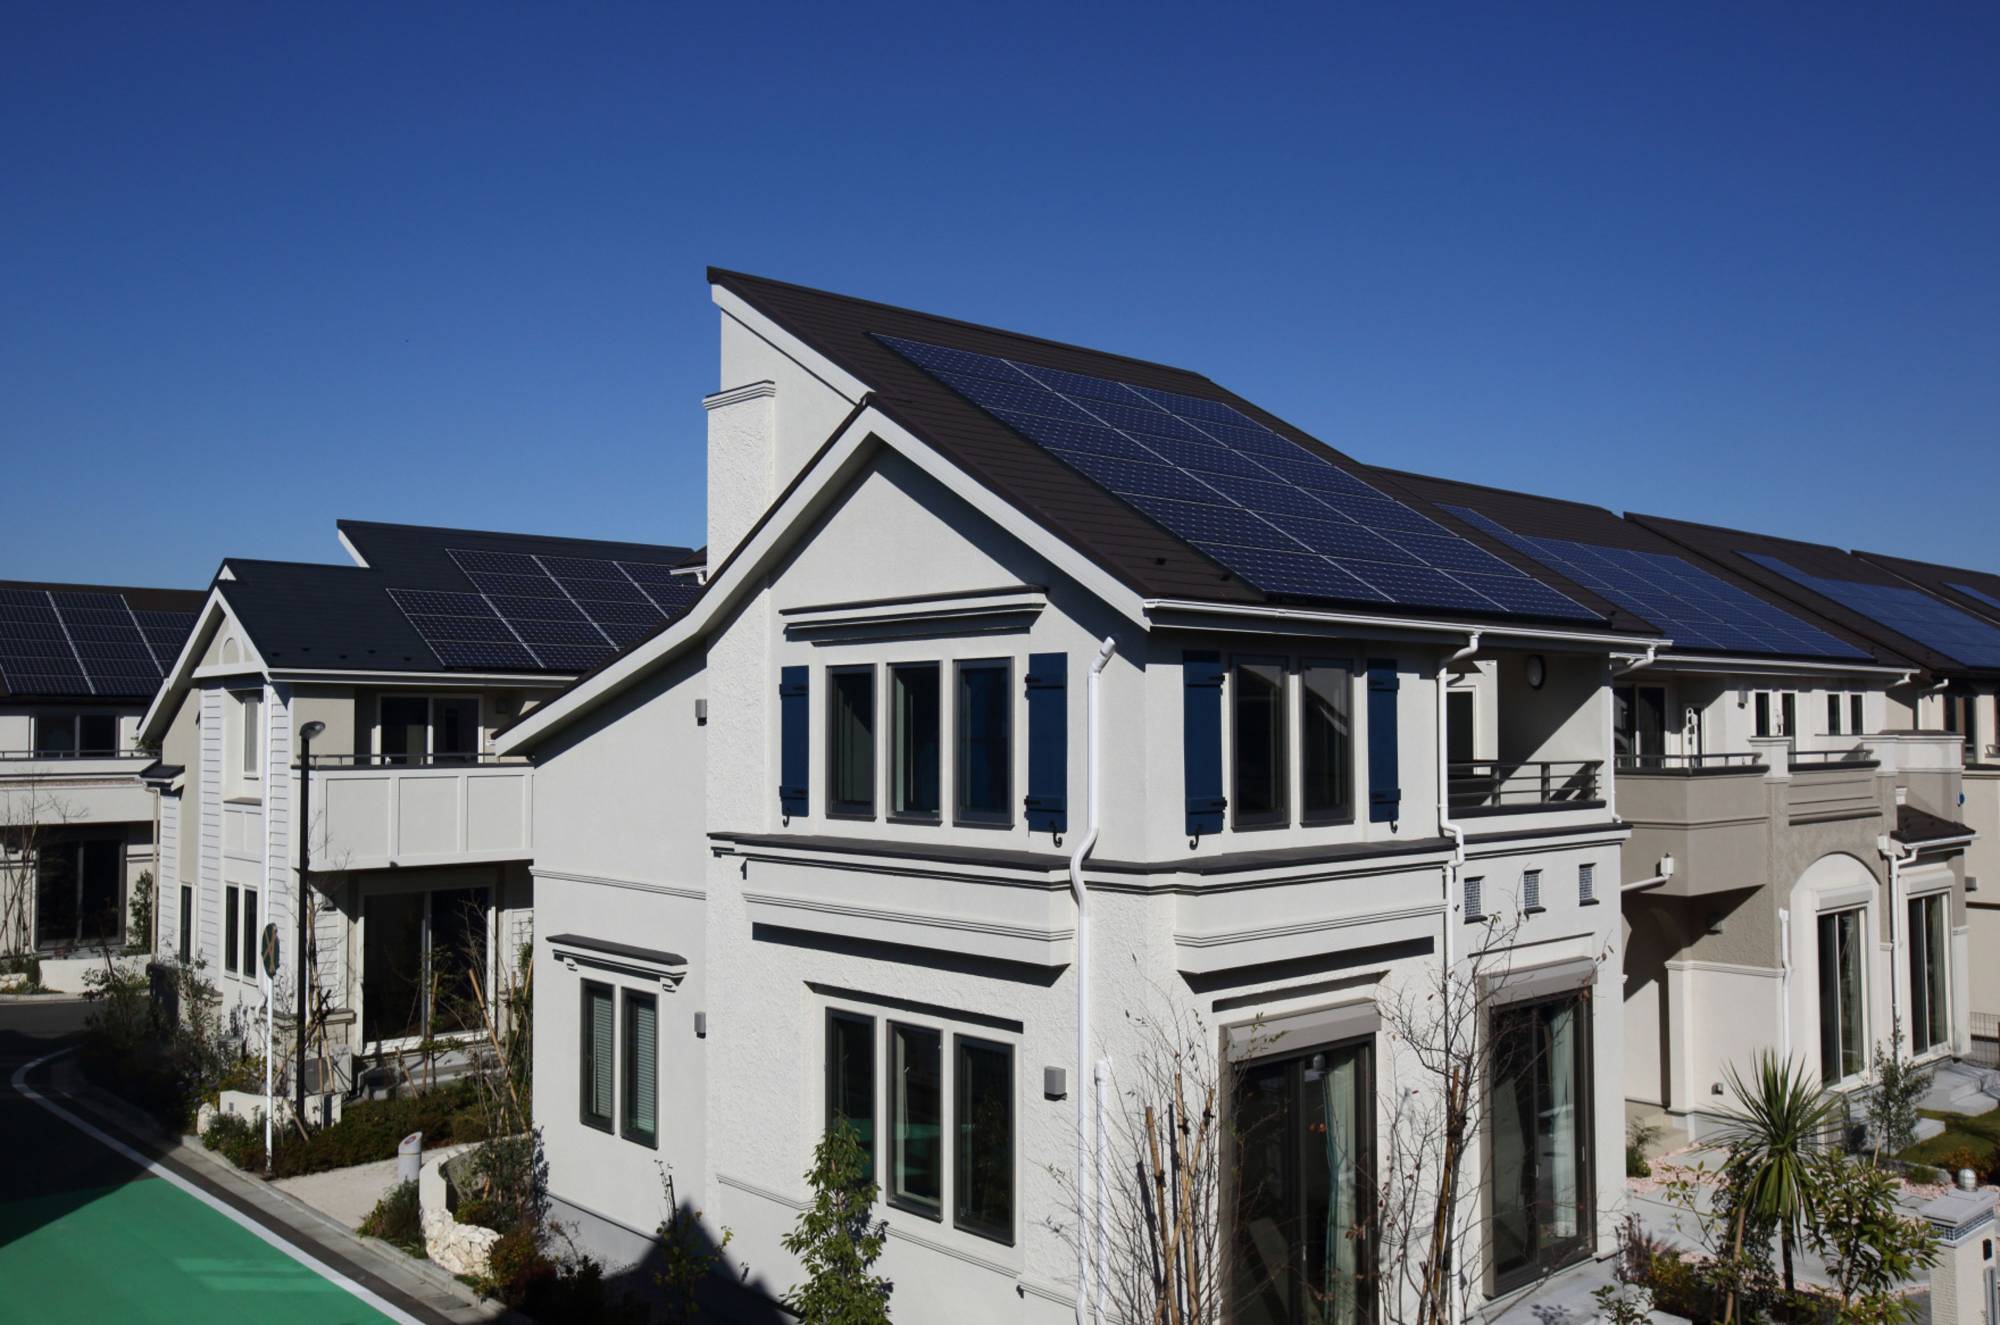 Tokyo'da yeni yapılan evlerde güneş paneli zorunlu olacak